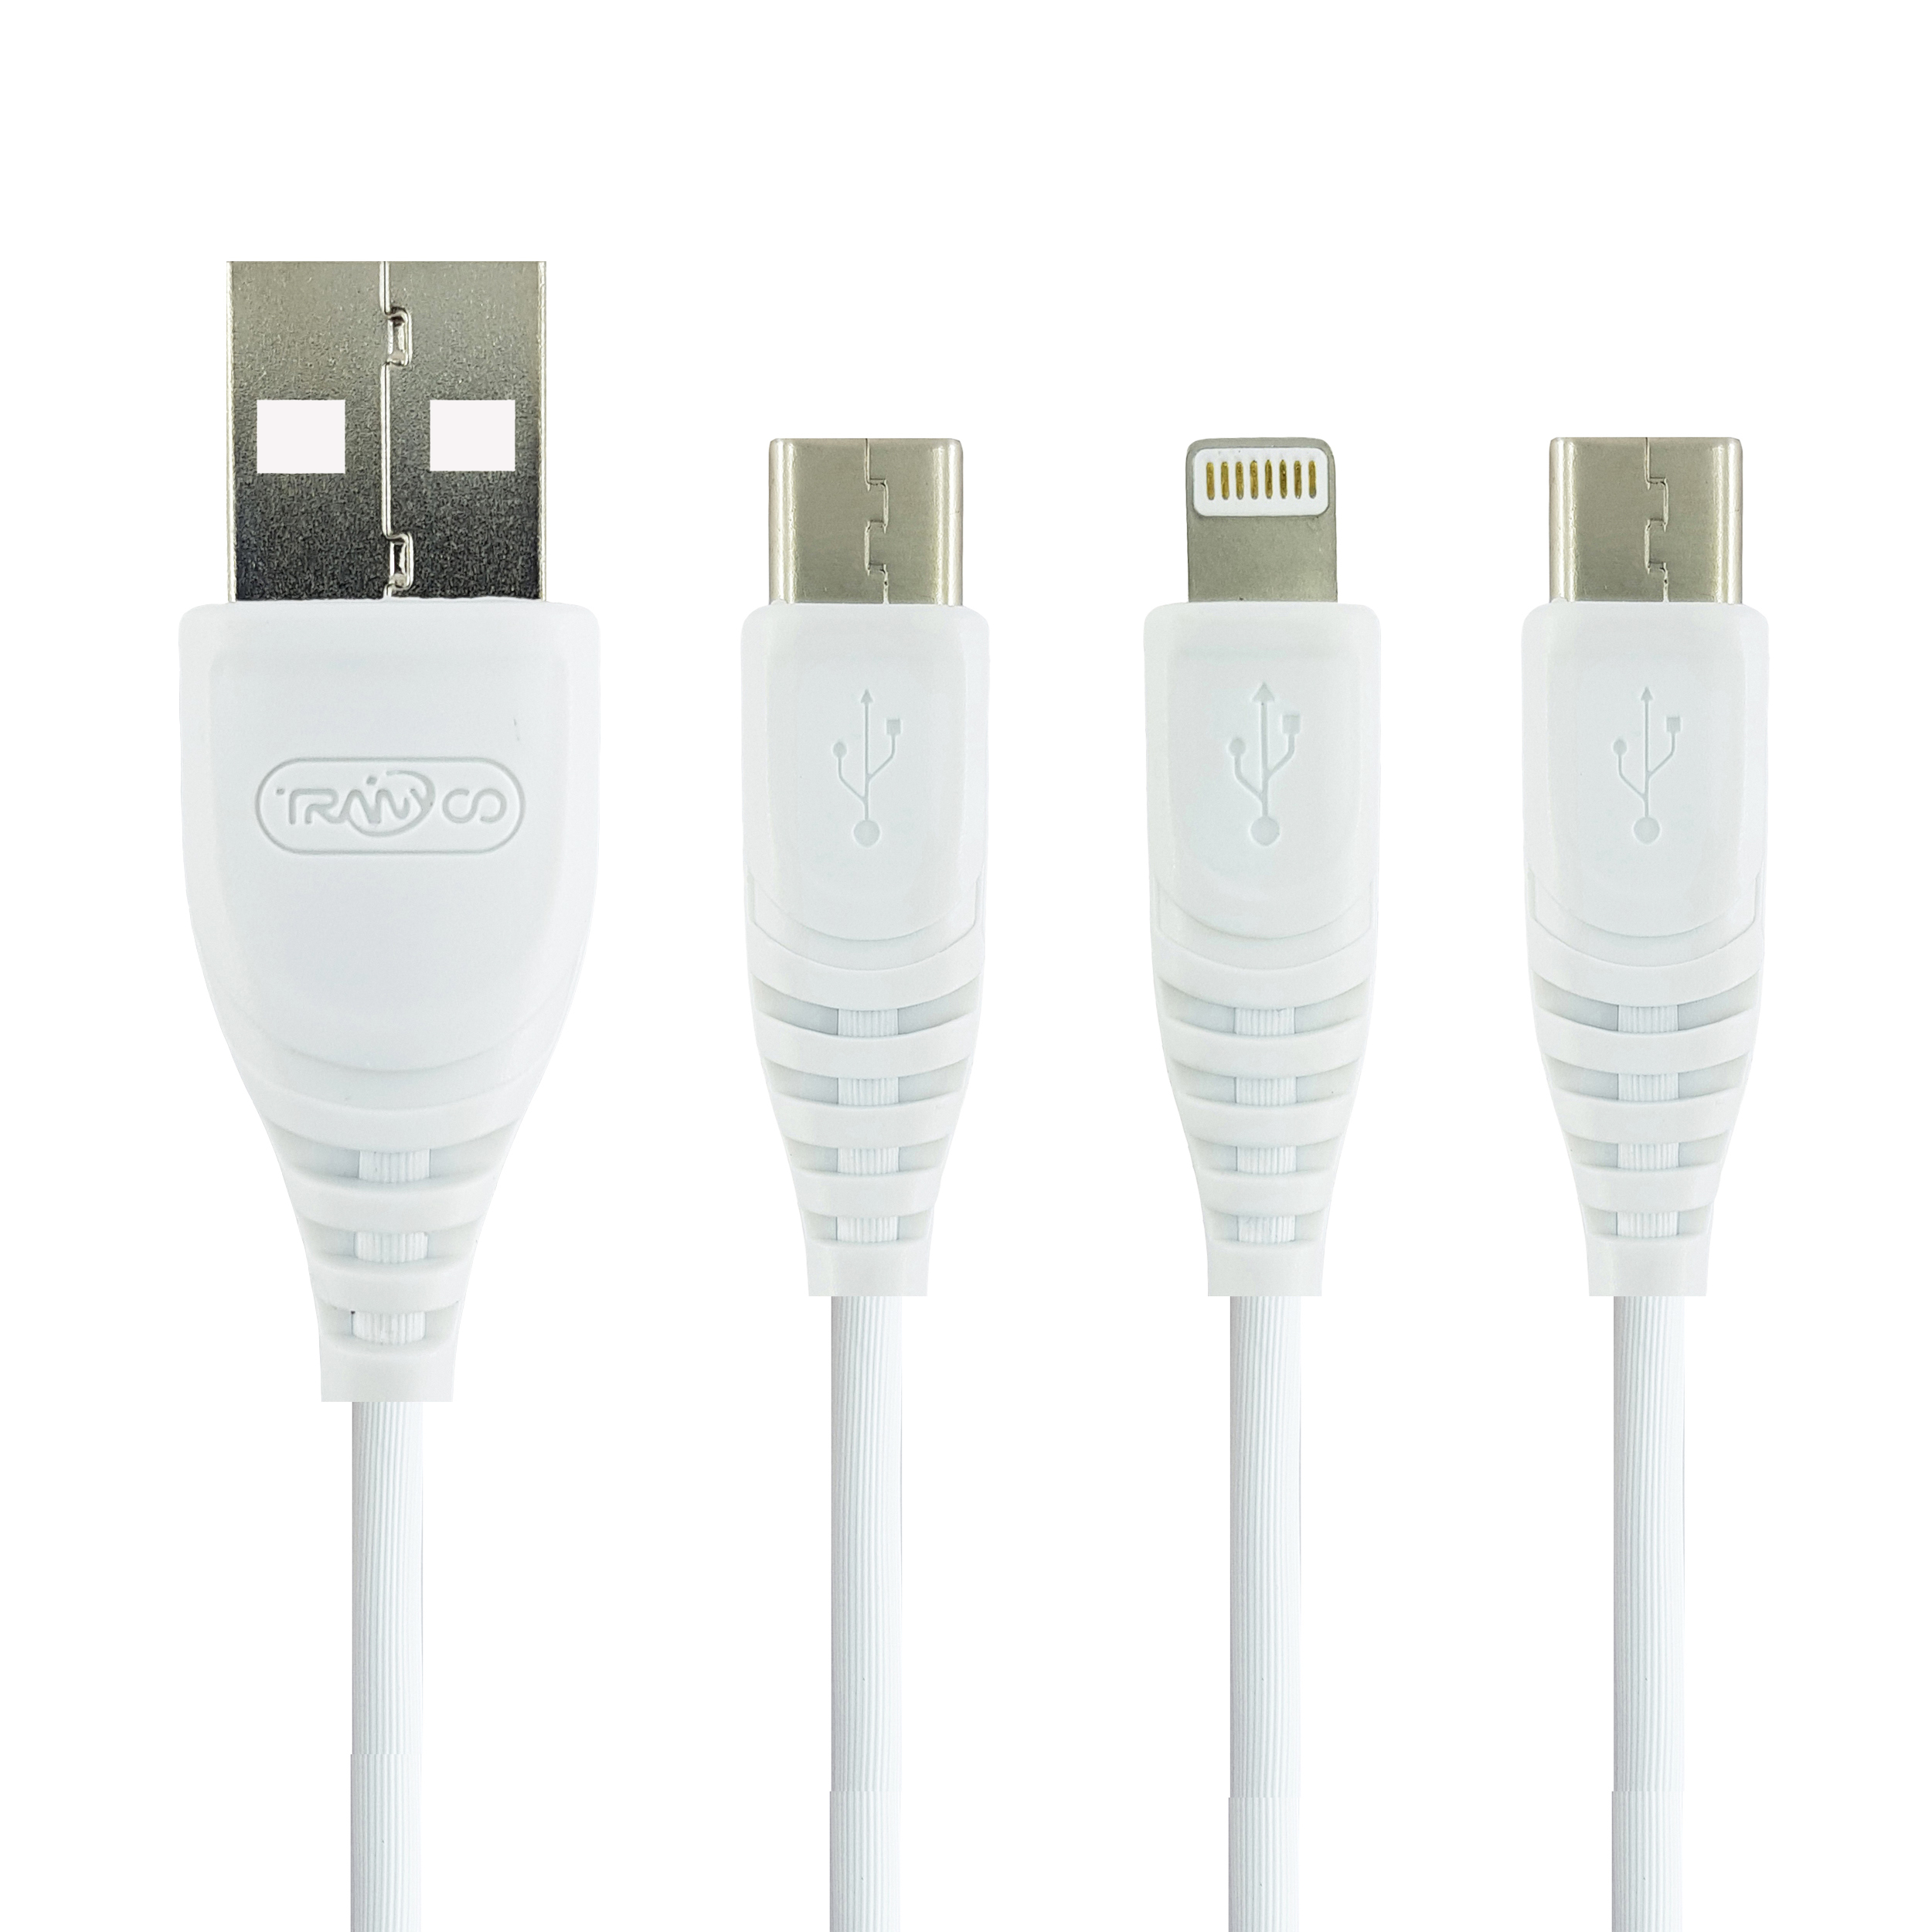 کابل تبدیل USB به microUSB / لایتنینگ / USB-C ترانیو مدل XS1 طول 1.2 متر